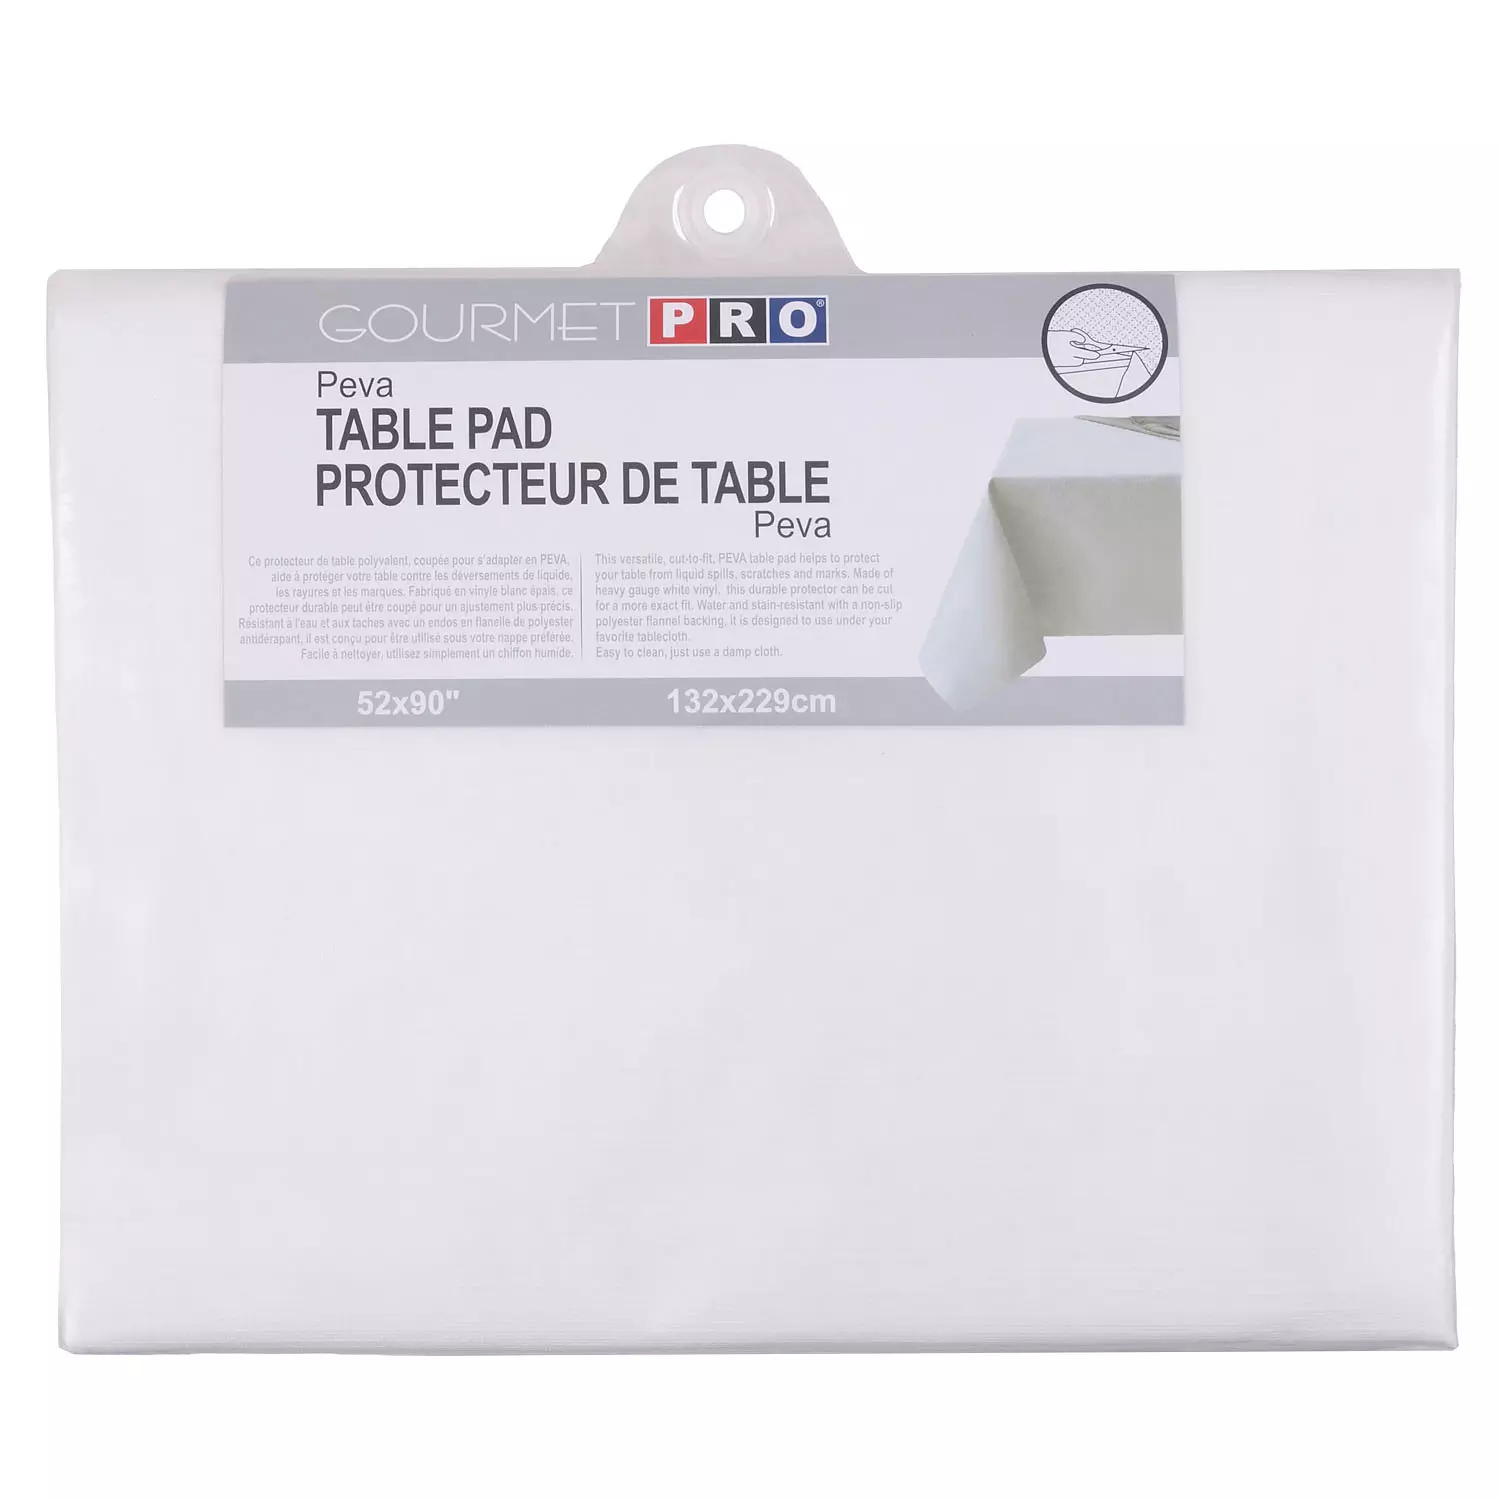 PROTECTION PIED DE TABLE - ACHAT / VENTE PROTECTION PIED DE TABLE AU  MEILLEUR PRIX - HELLOPRO